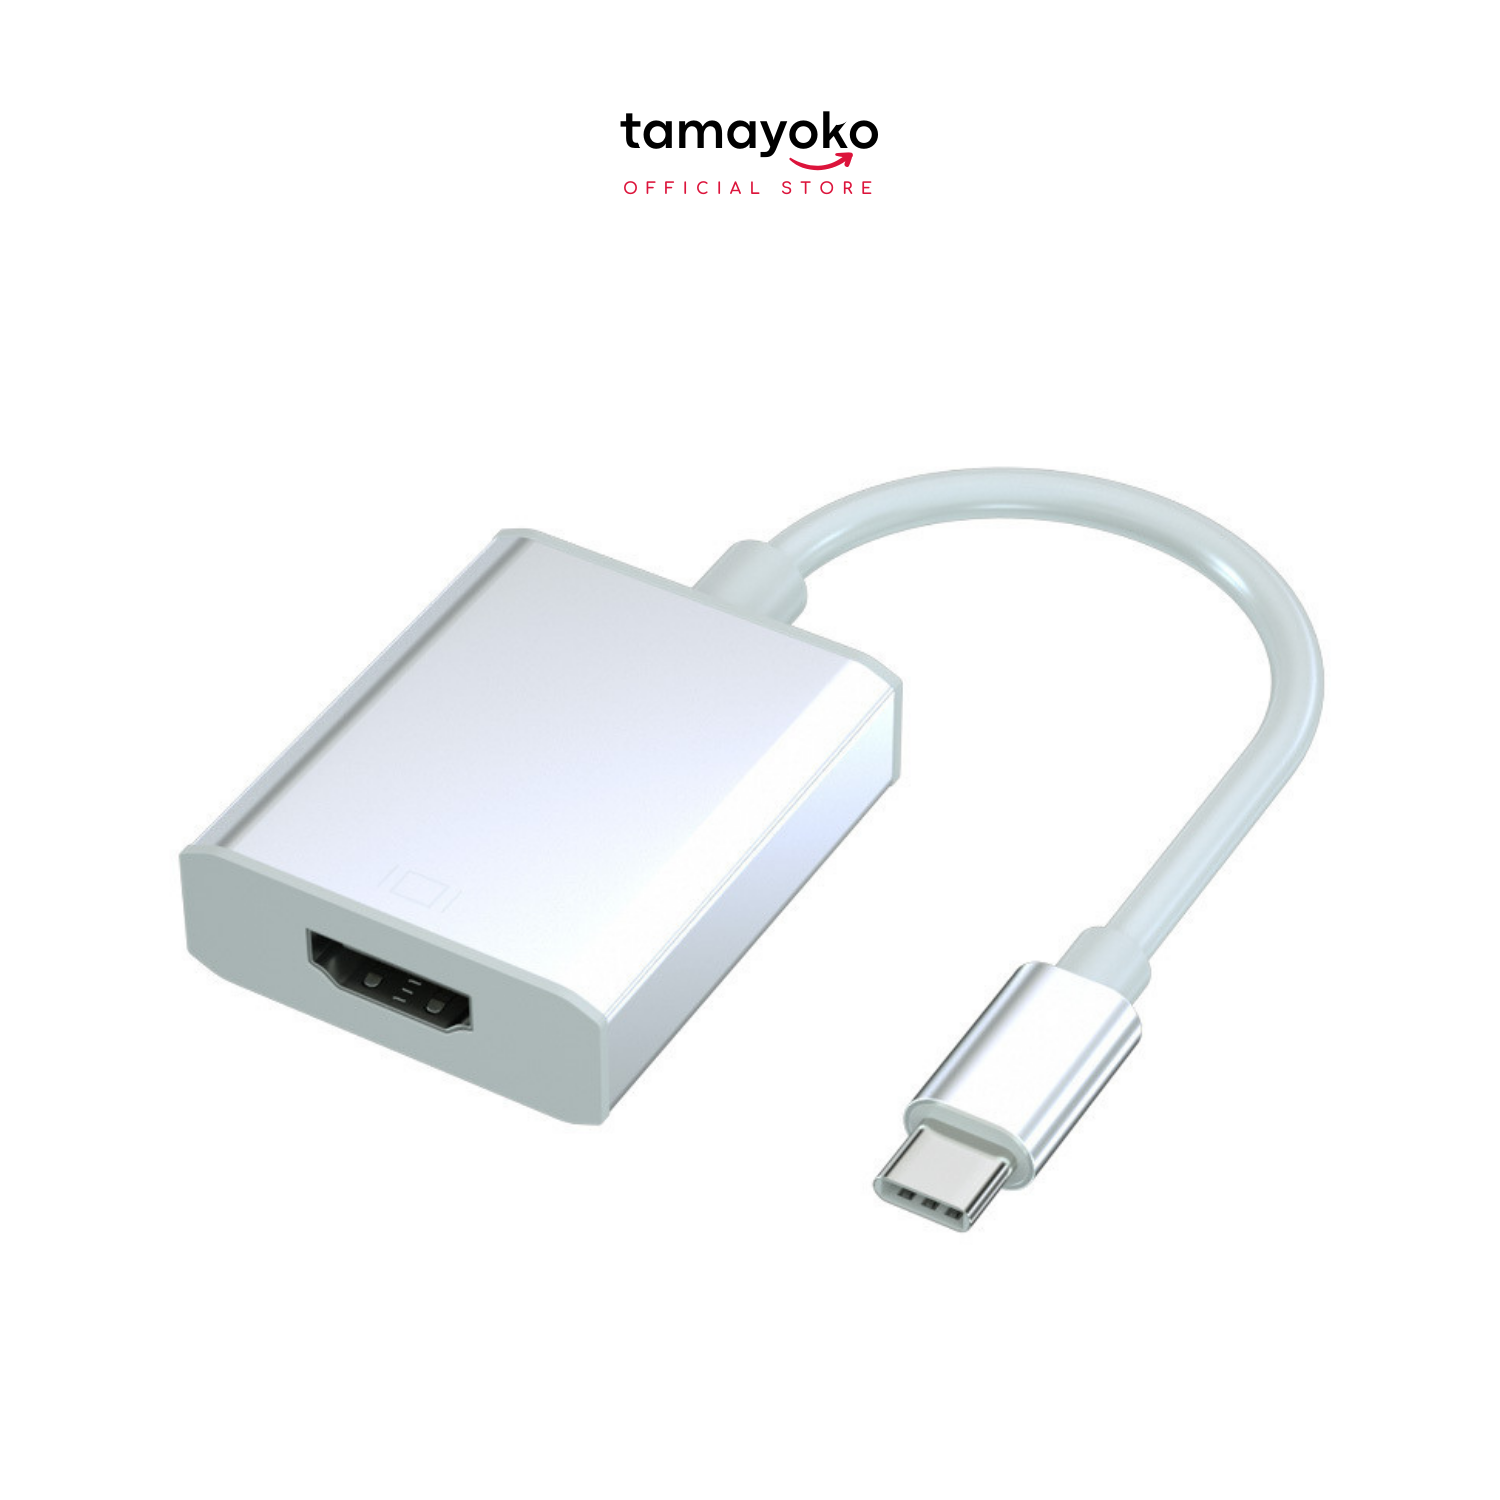 Hub Chuyển Đổi USB Type C to HDMI Độ Phân Giải 4K, 1080P Cho Tivi/Laptop/Playstation/PC - Hàng Chính Hãng Tamayoko